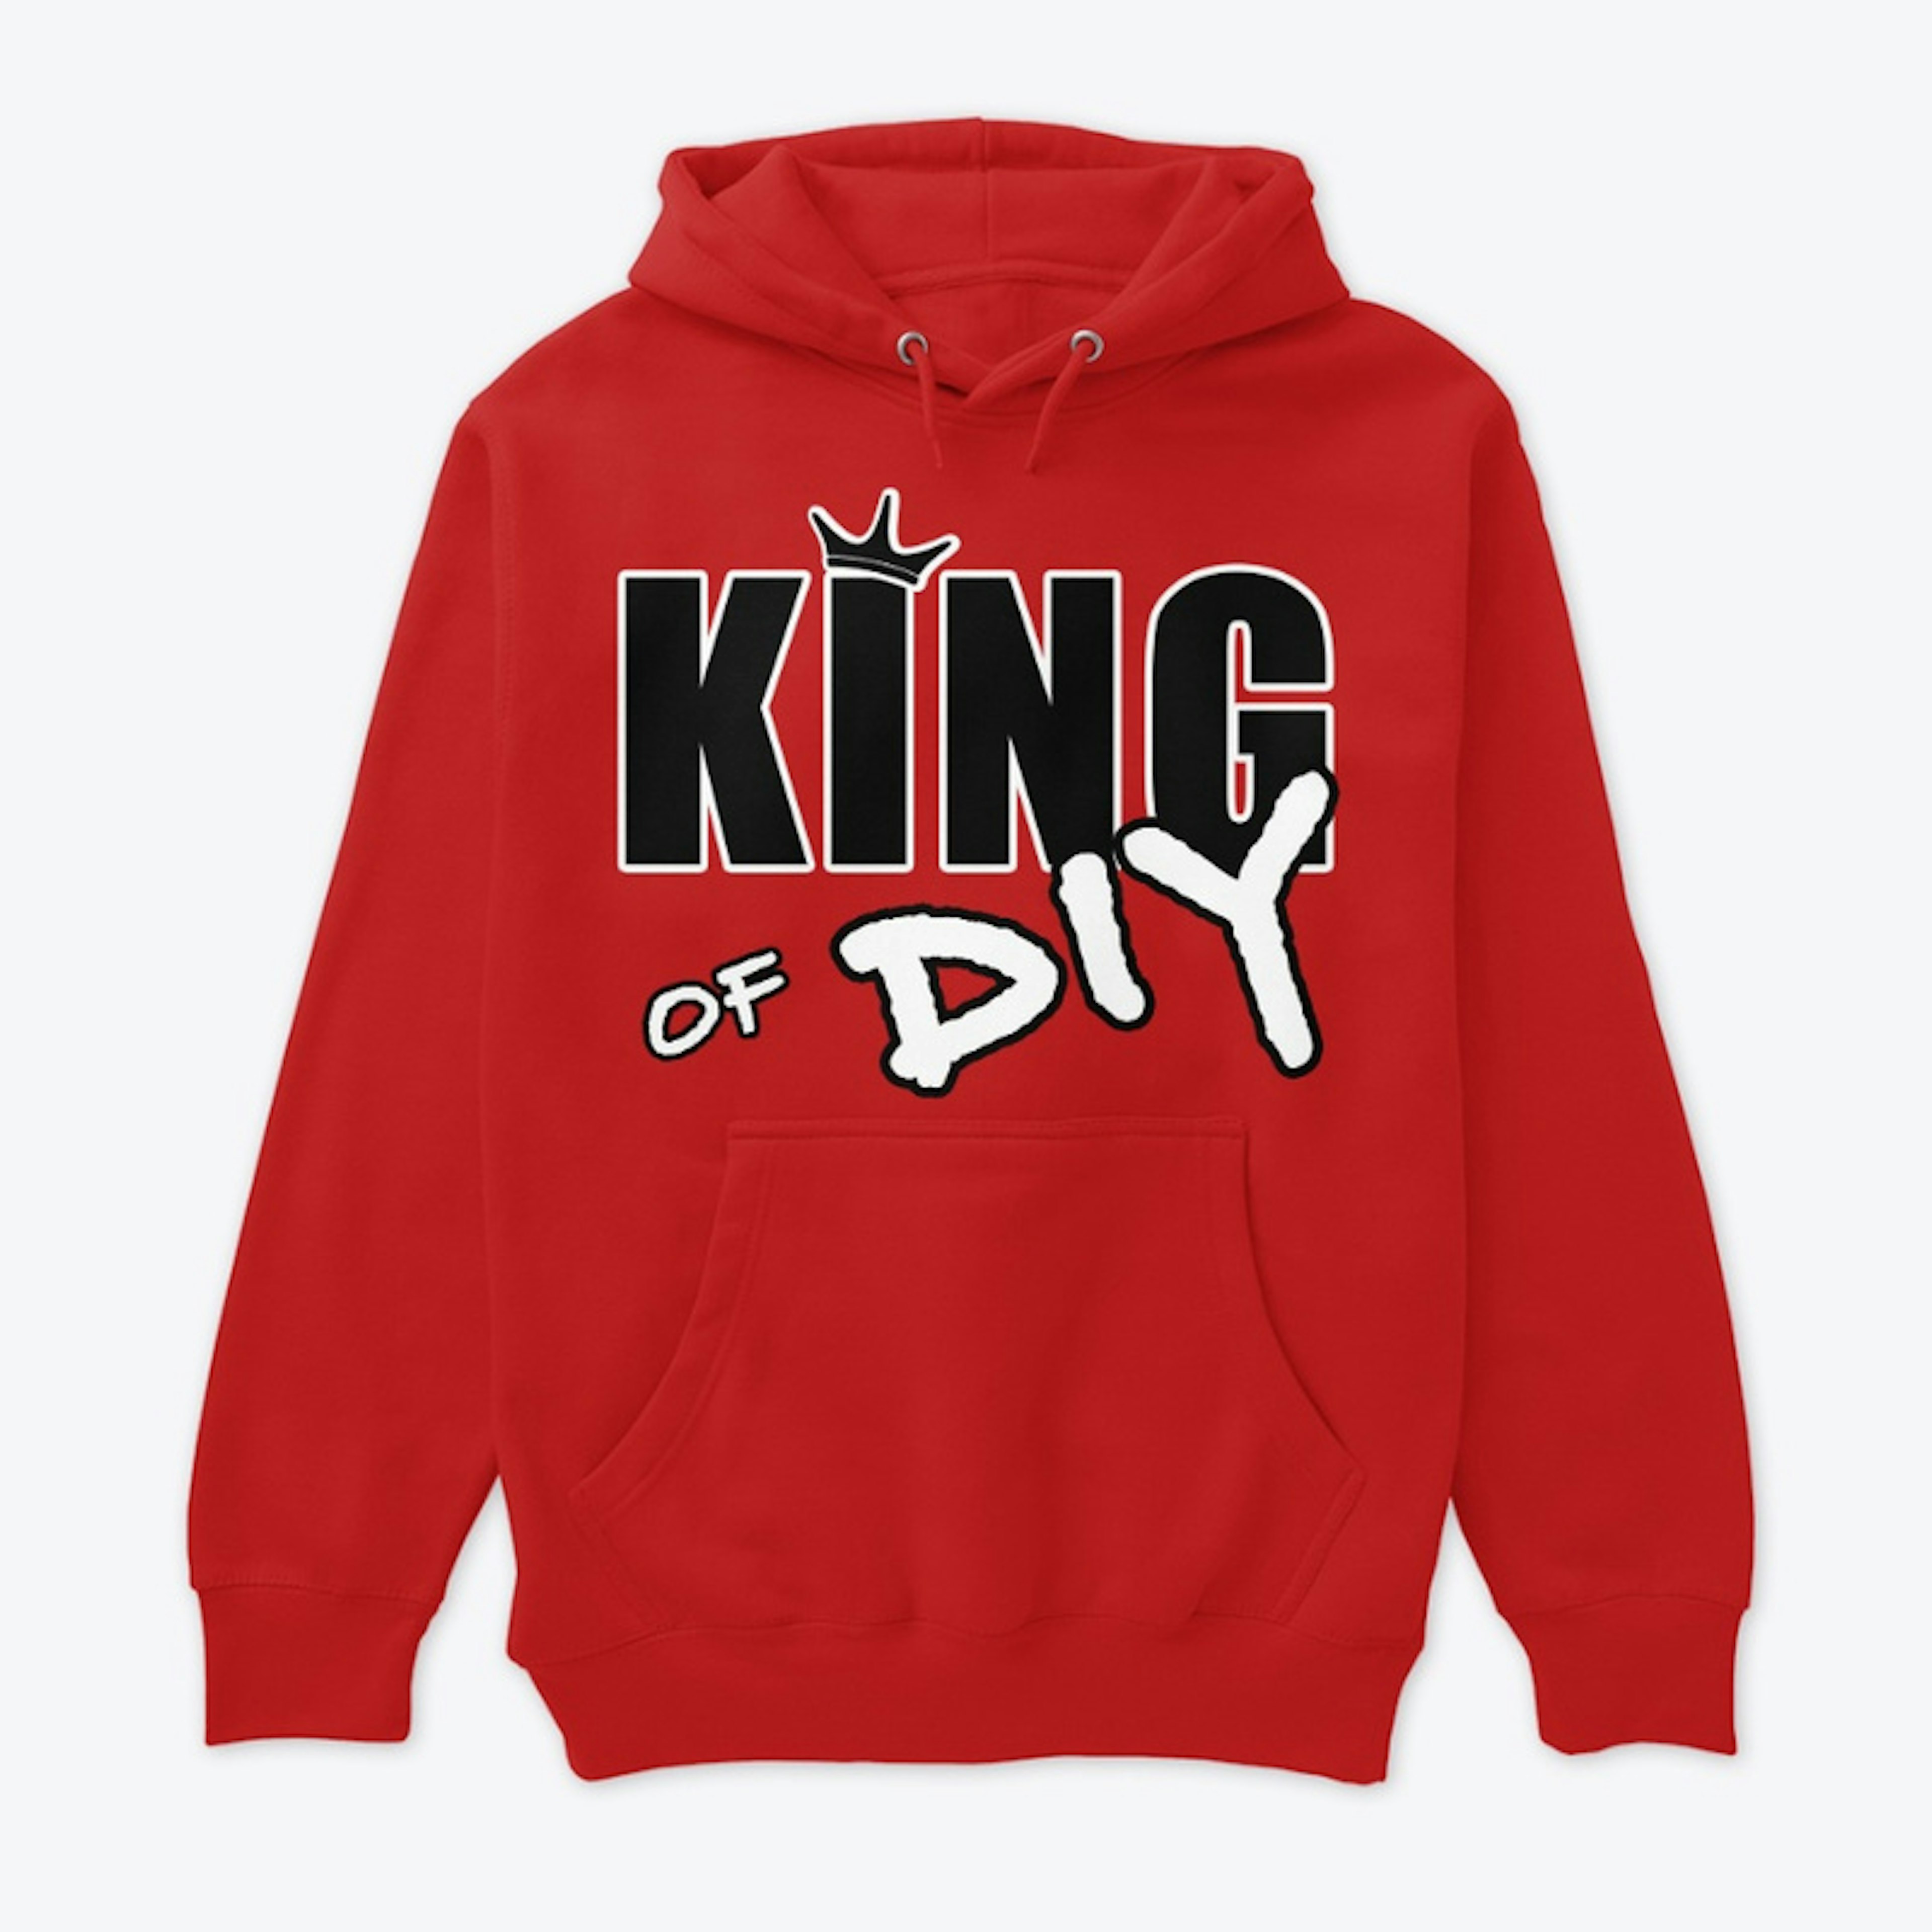 King of DIY hoodie